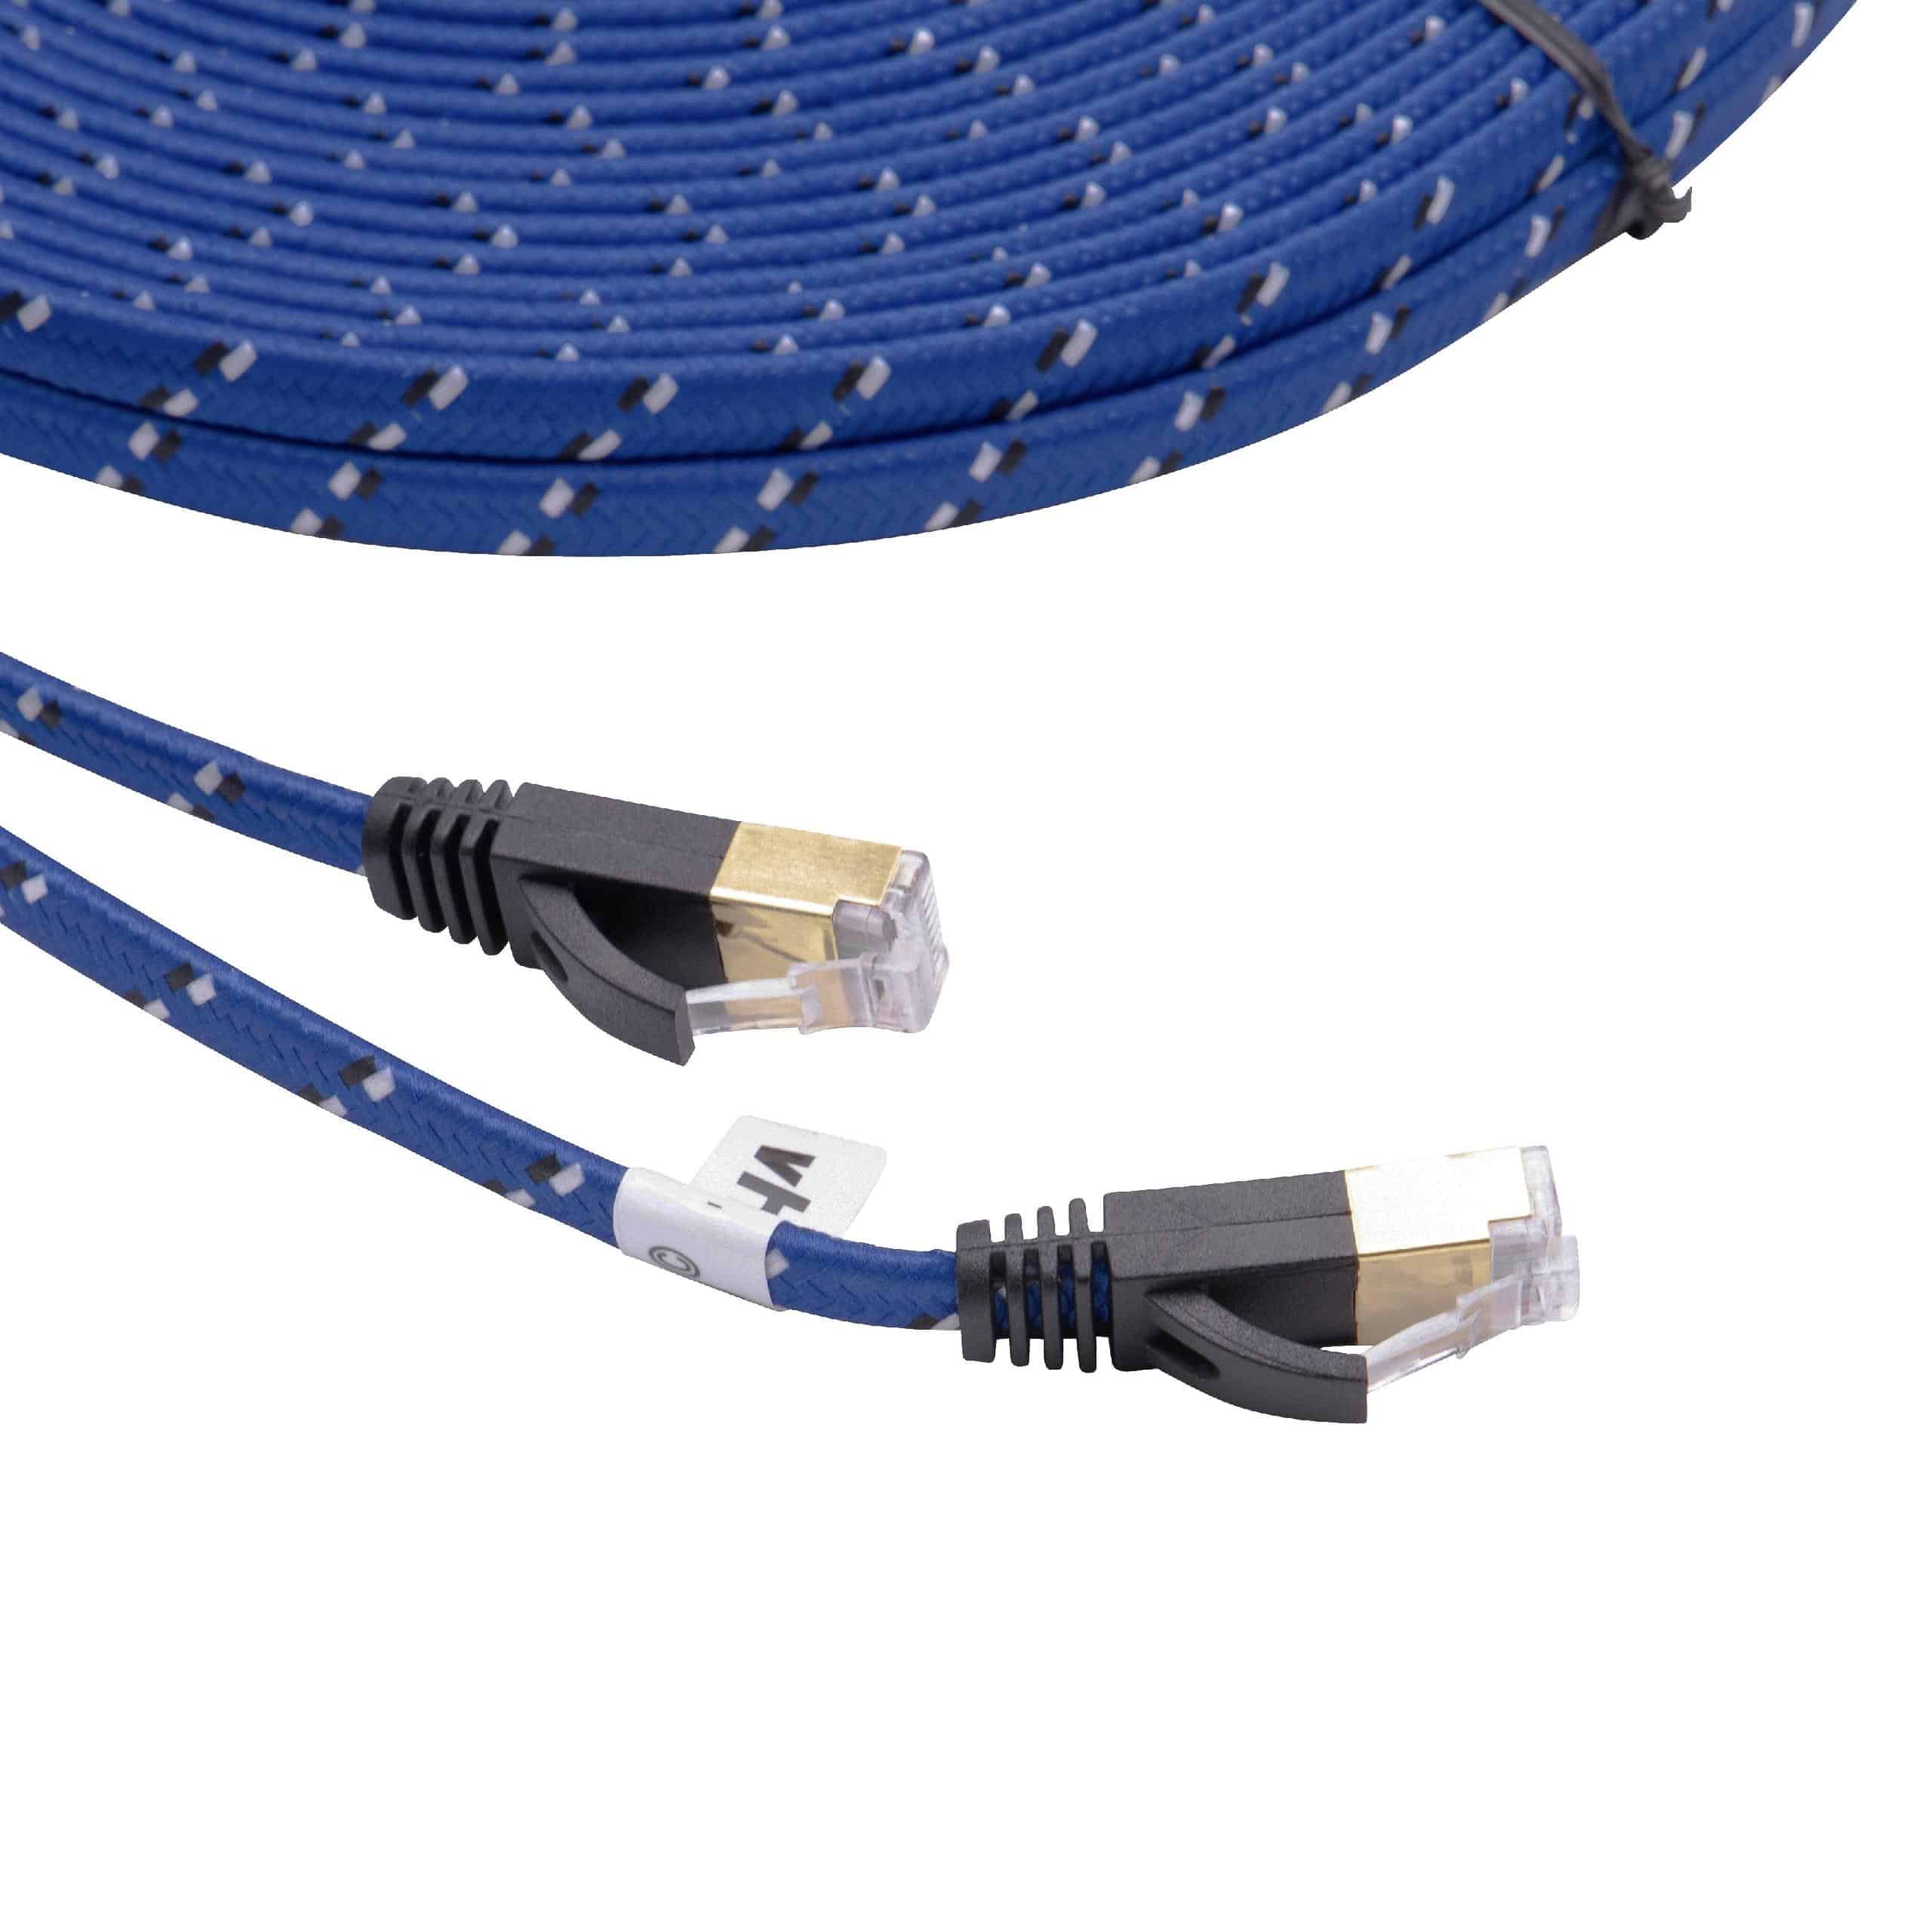 Cable de red de Ethernet, LAN, cable patch Cat7 20m azul cable plano de tendido